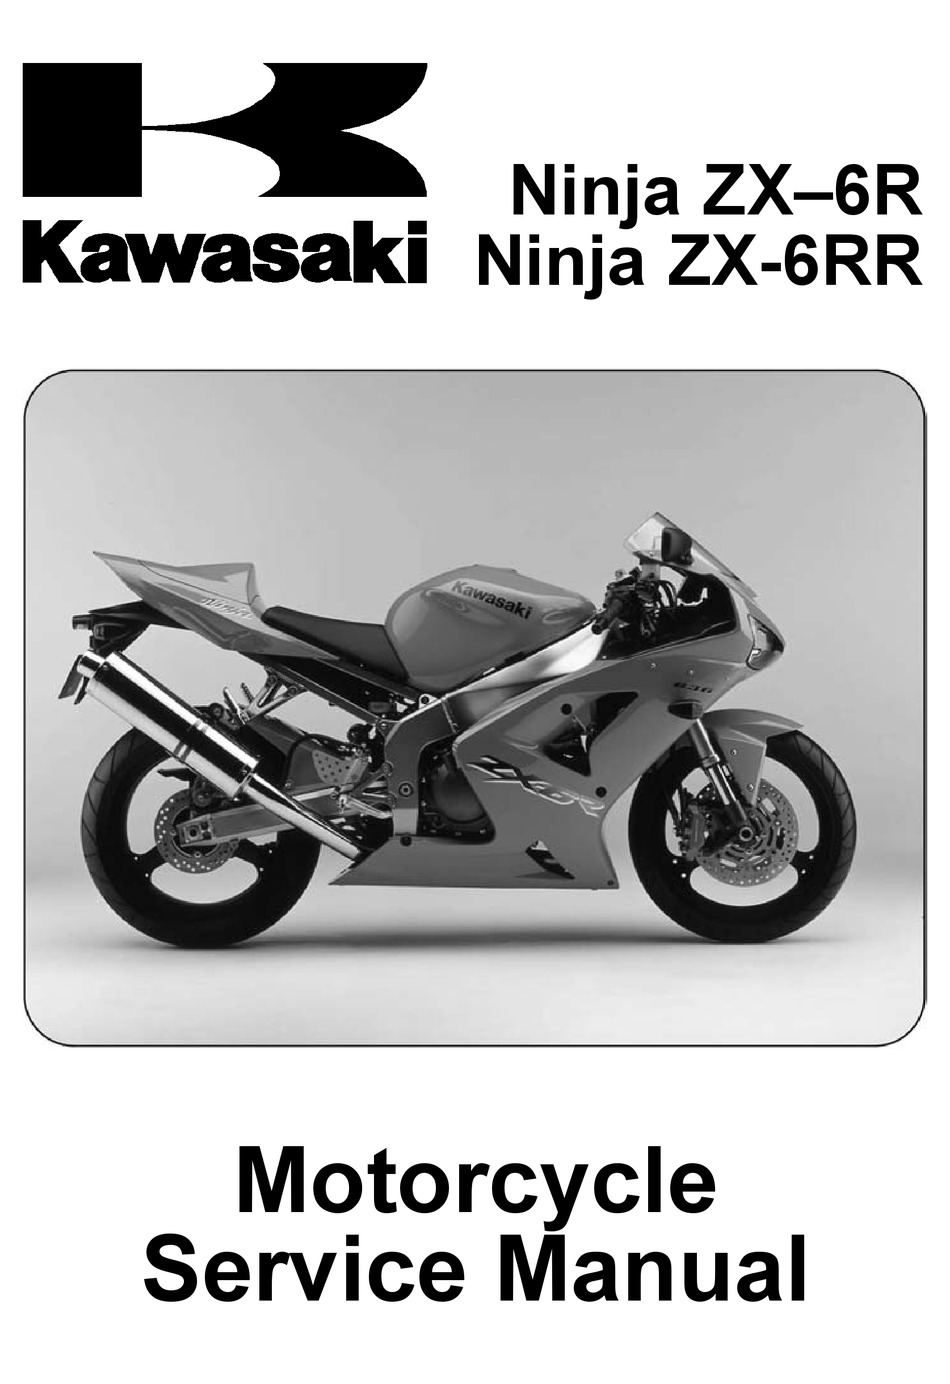 Kawasaki Ninja Zx 6r Service Manual Pdf